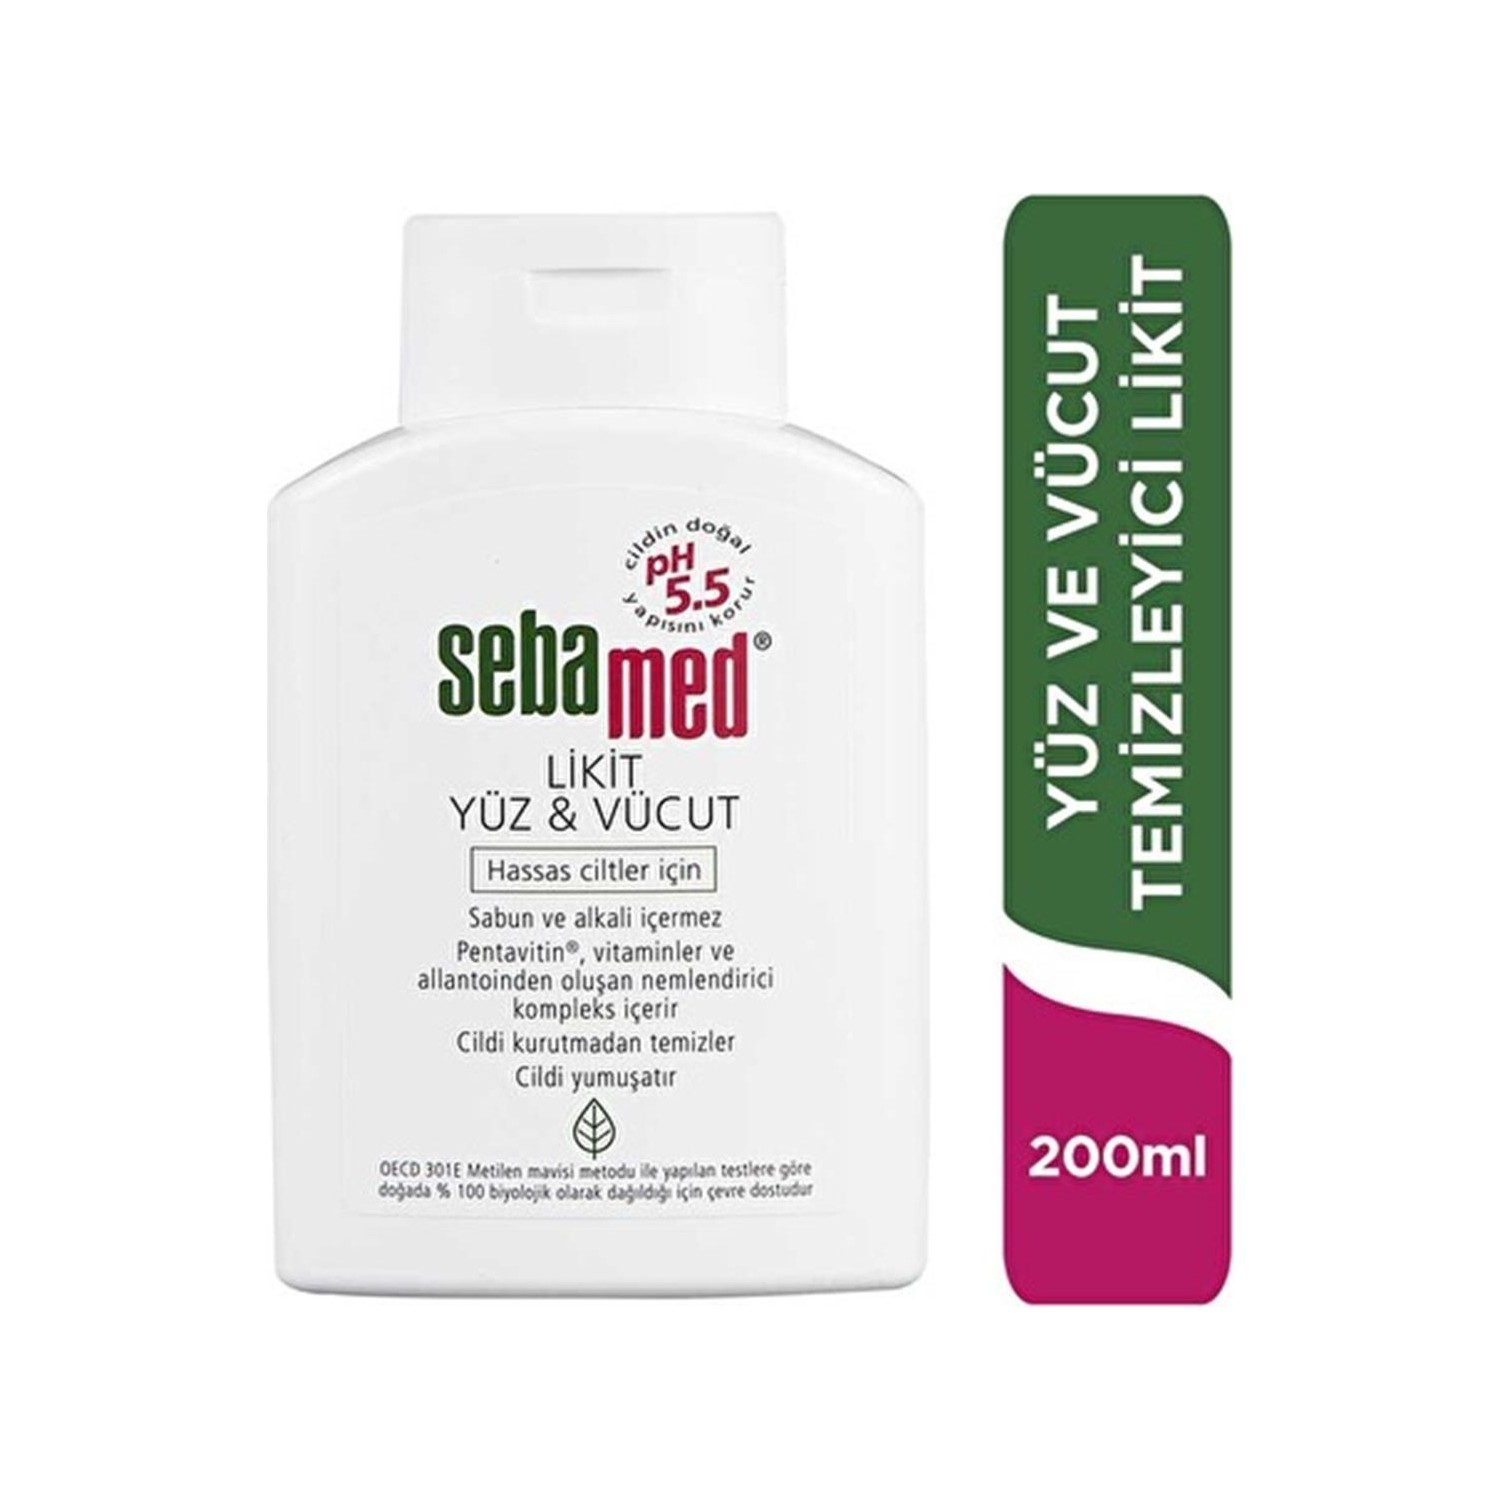 Очищающее средство Sebamed Liquid для лица и тела, 200 мл крем sebamed clear для лица 10 мл